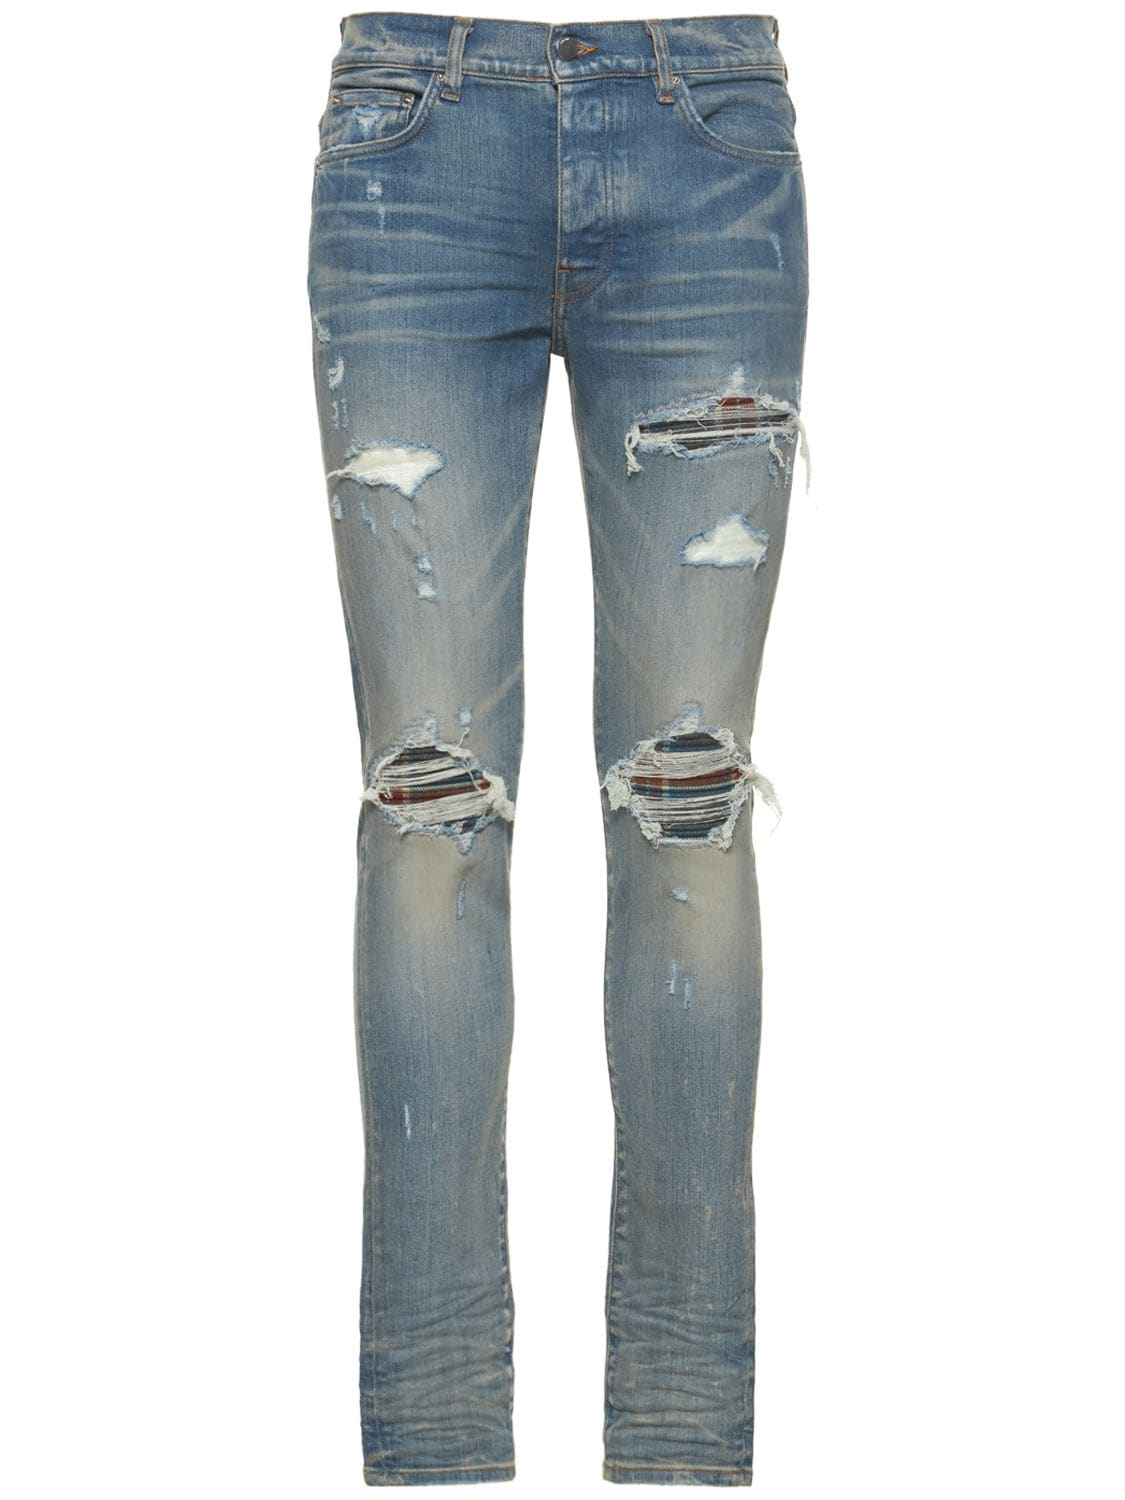 Mx1 Flannel Cotton Denim Jeans